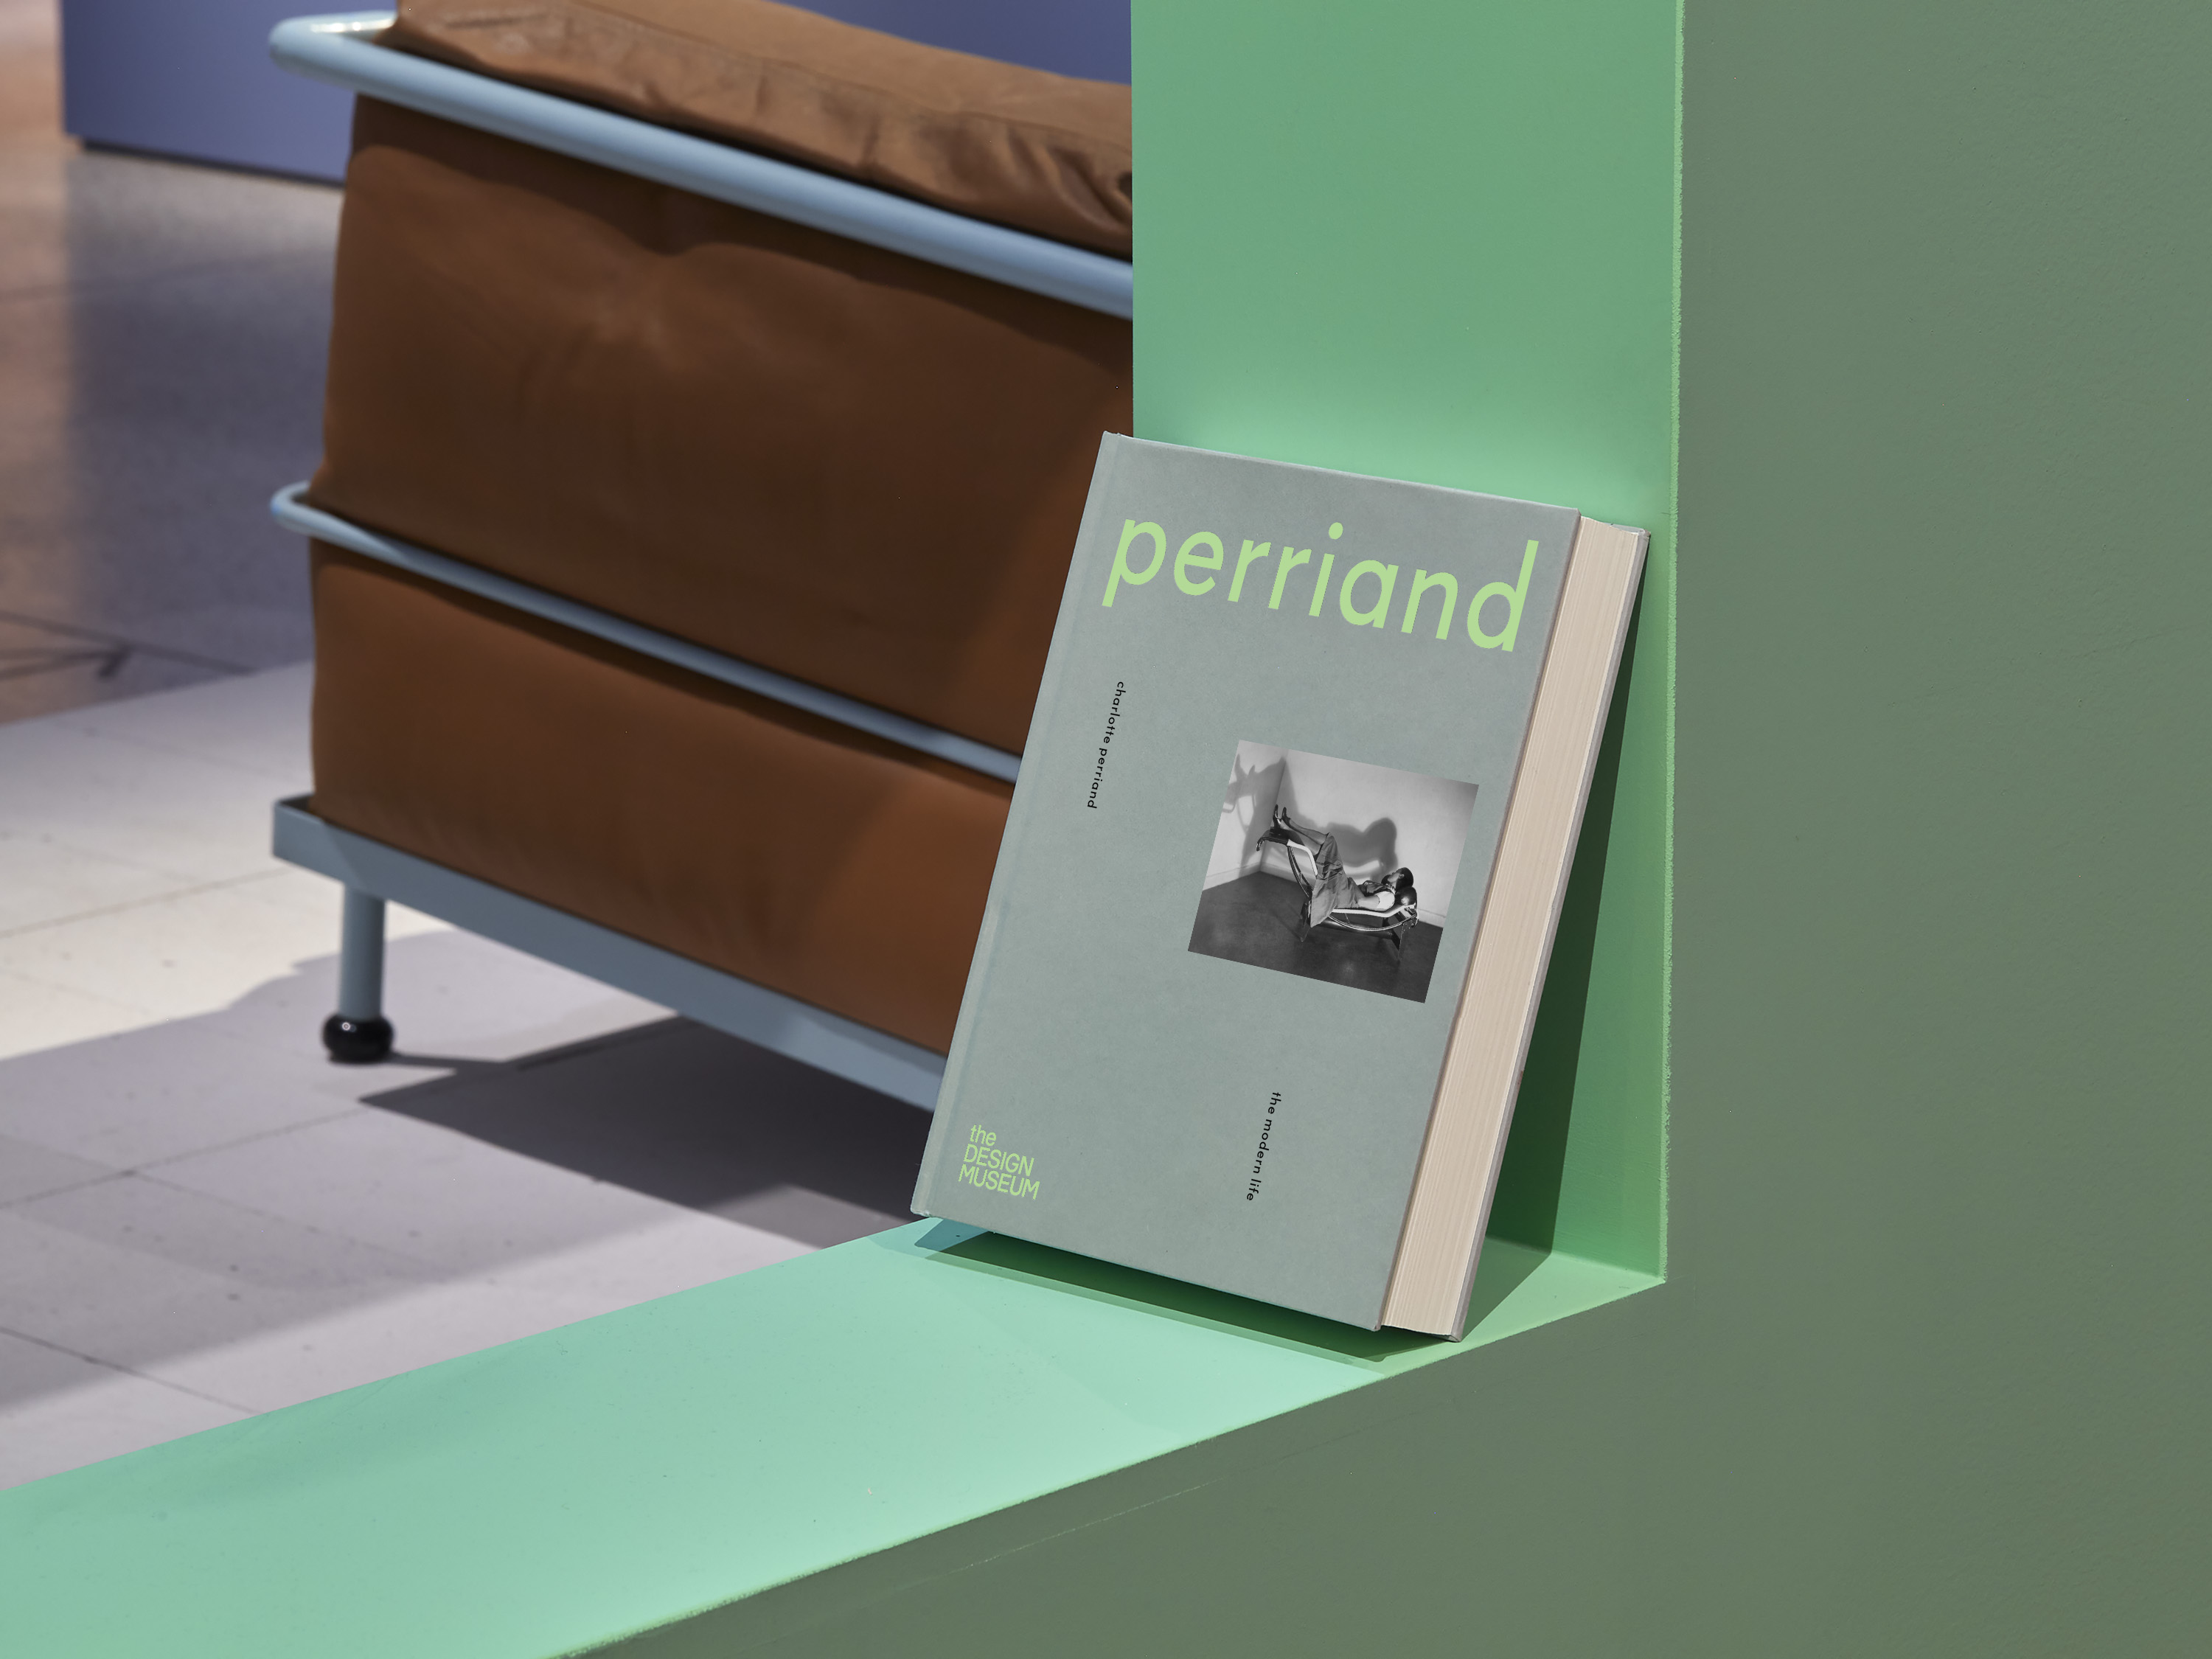 Charlotte Perriand: The Modern Life – homework